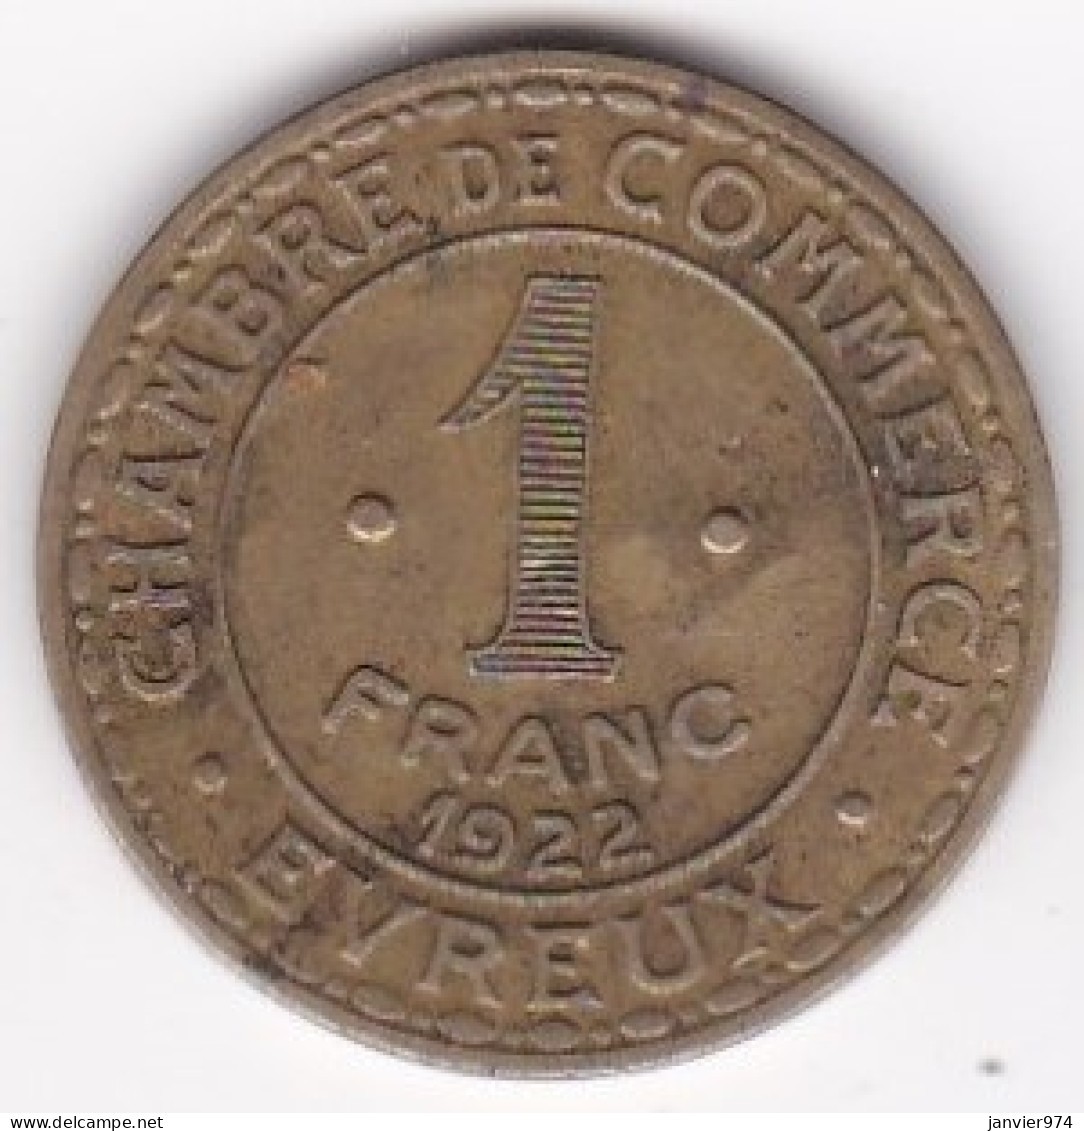 27 . Eure. Chambre De Commerce Evreux 1 Franc 1922. En Laiton - Monetary / Of Necessity